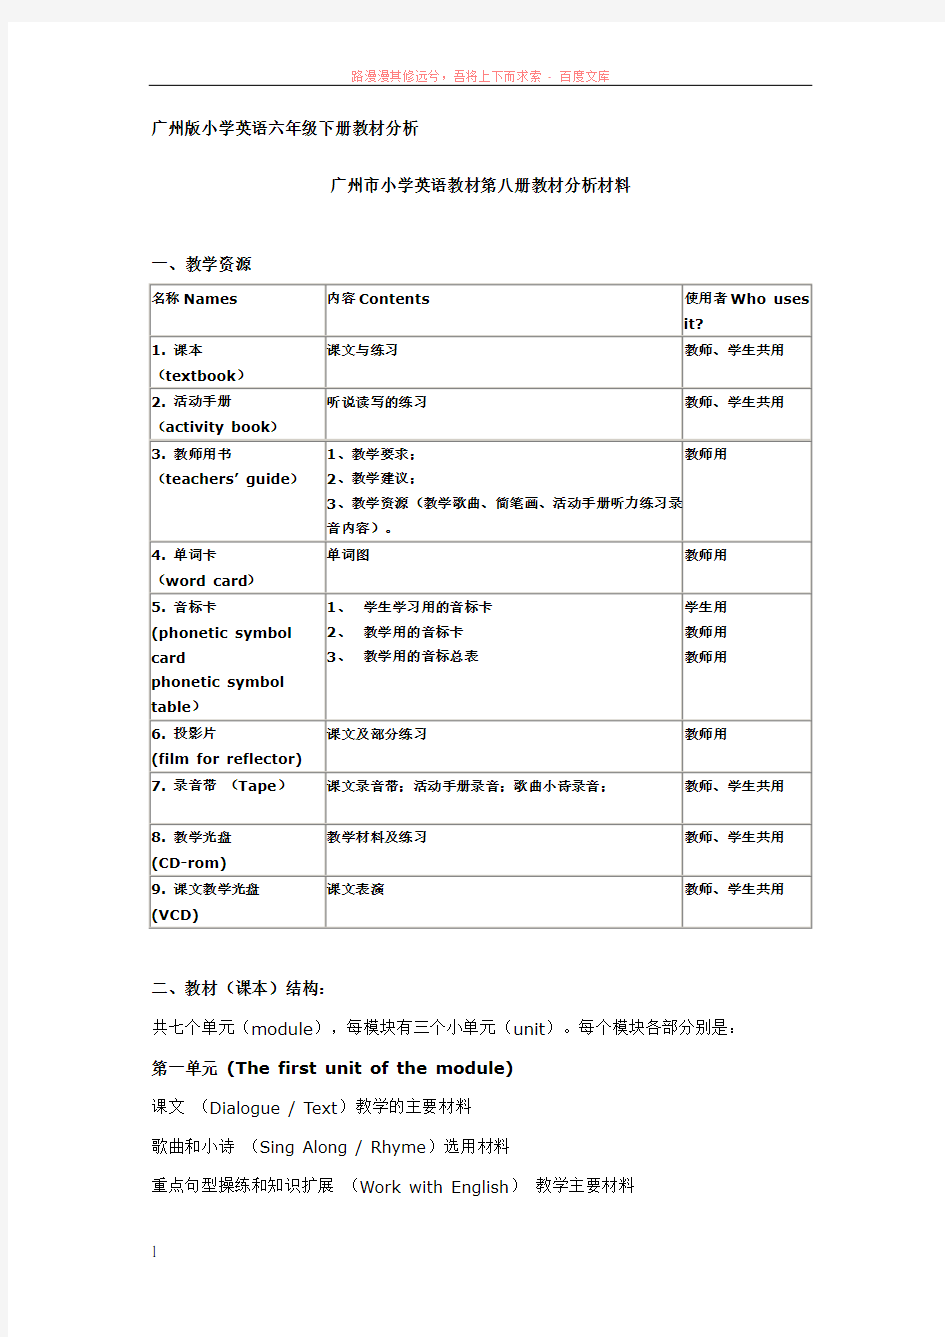 广州版小学英语六年级下册教材分析 